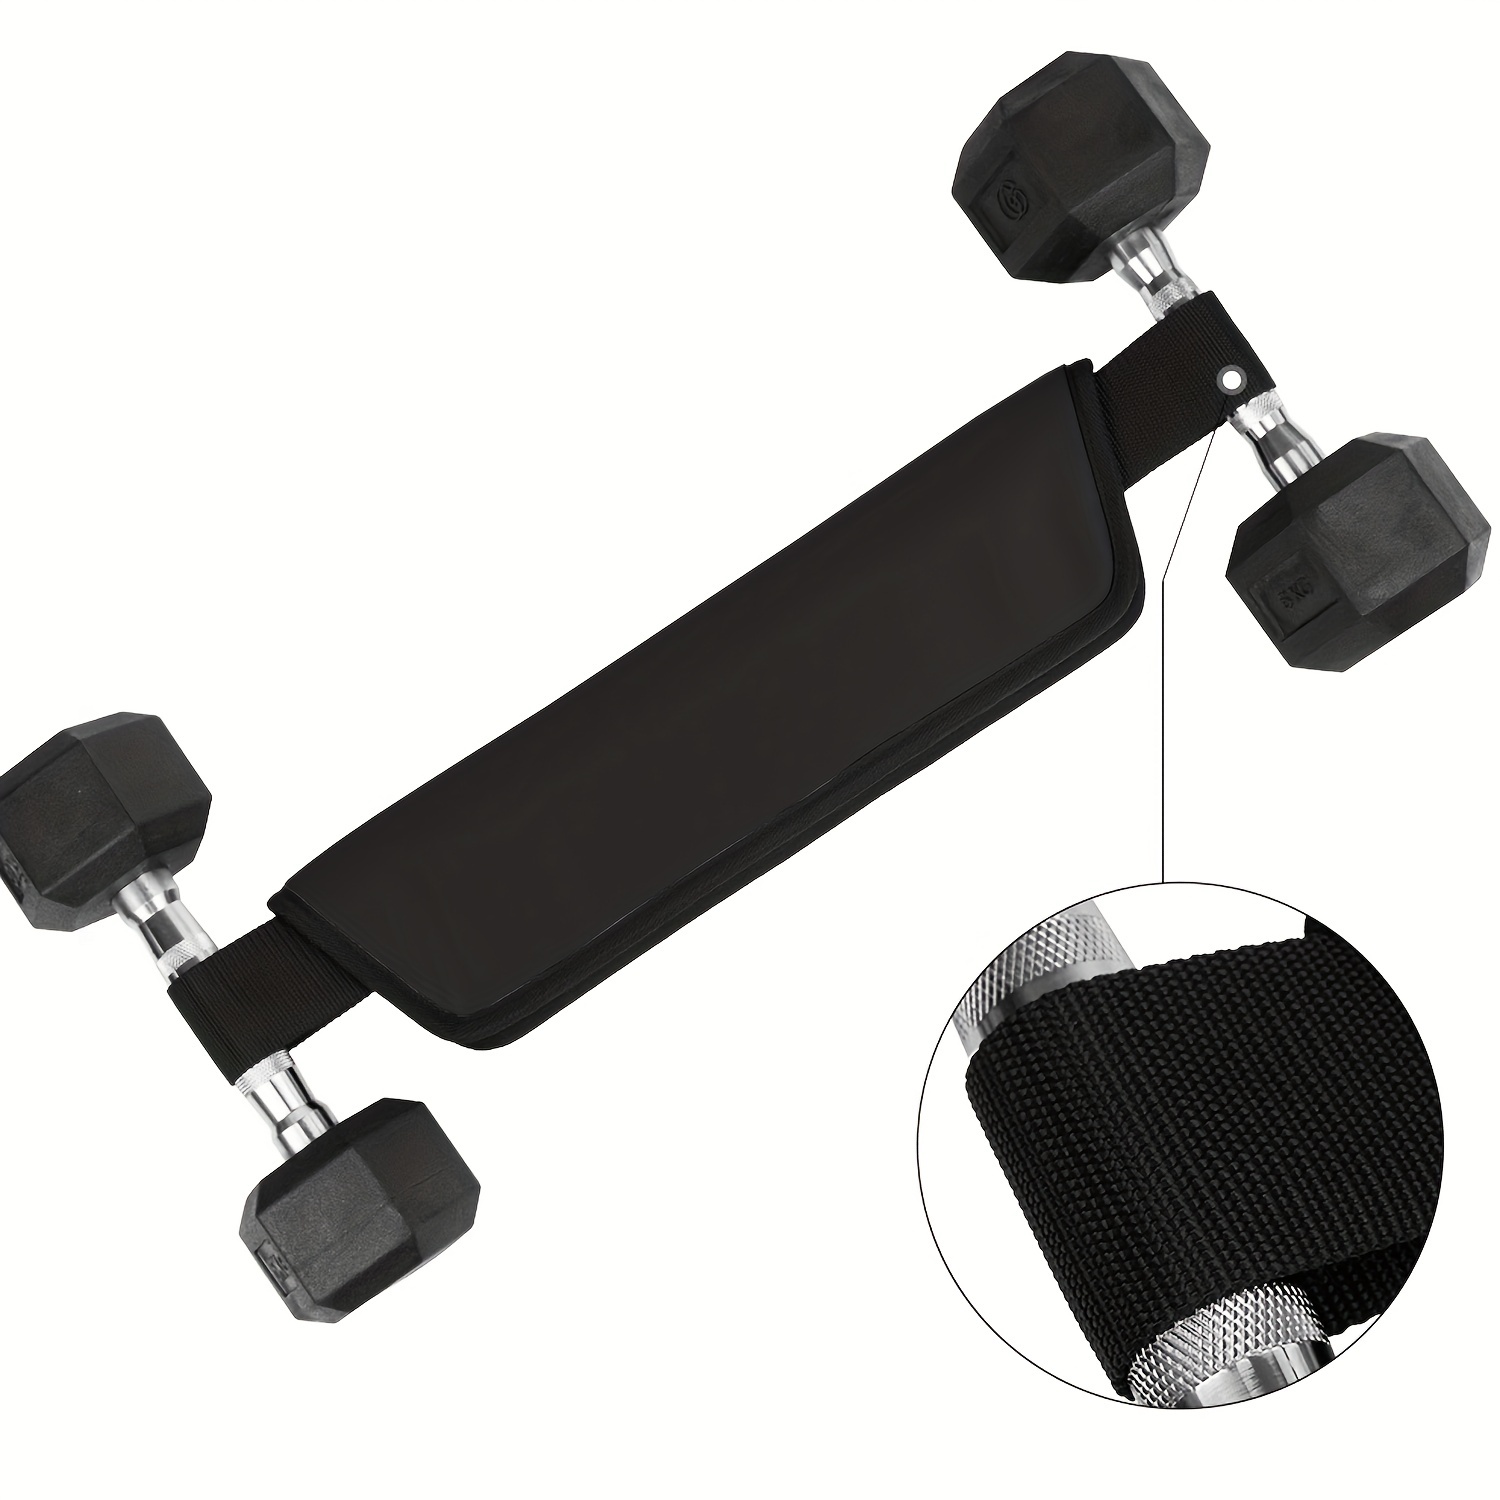 YOYINMIL - Cinturón de empuje de cadera para peso, cinturón de glúteos para  ejercicio de empuje de cadera, cinturón de puente de cadera con